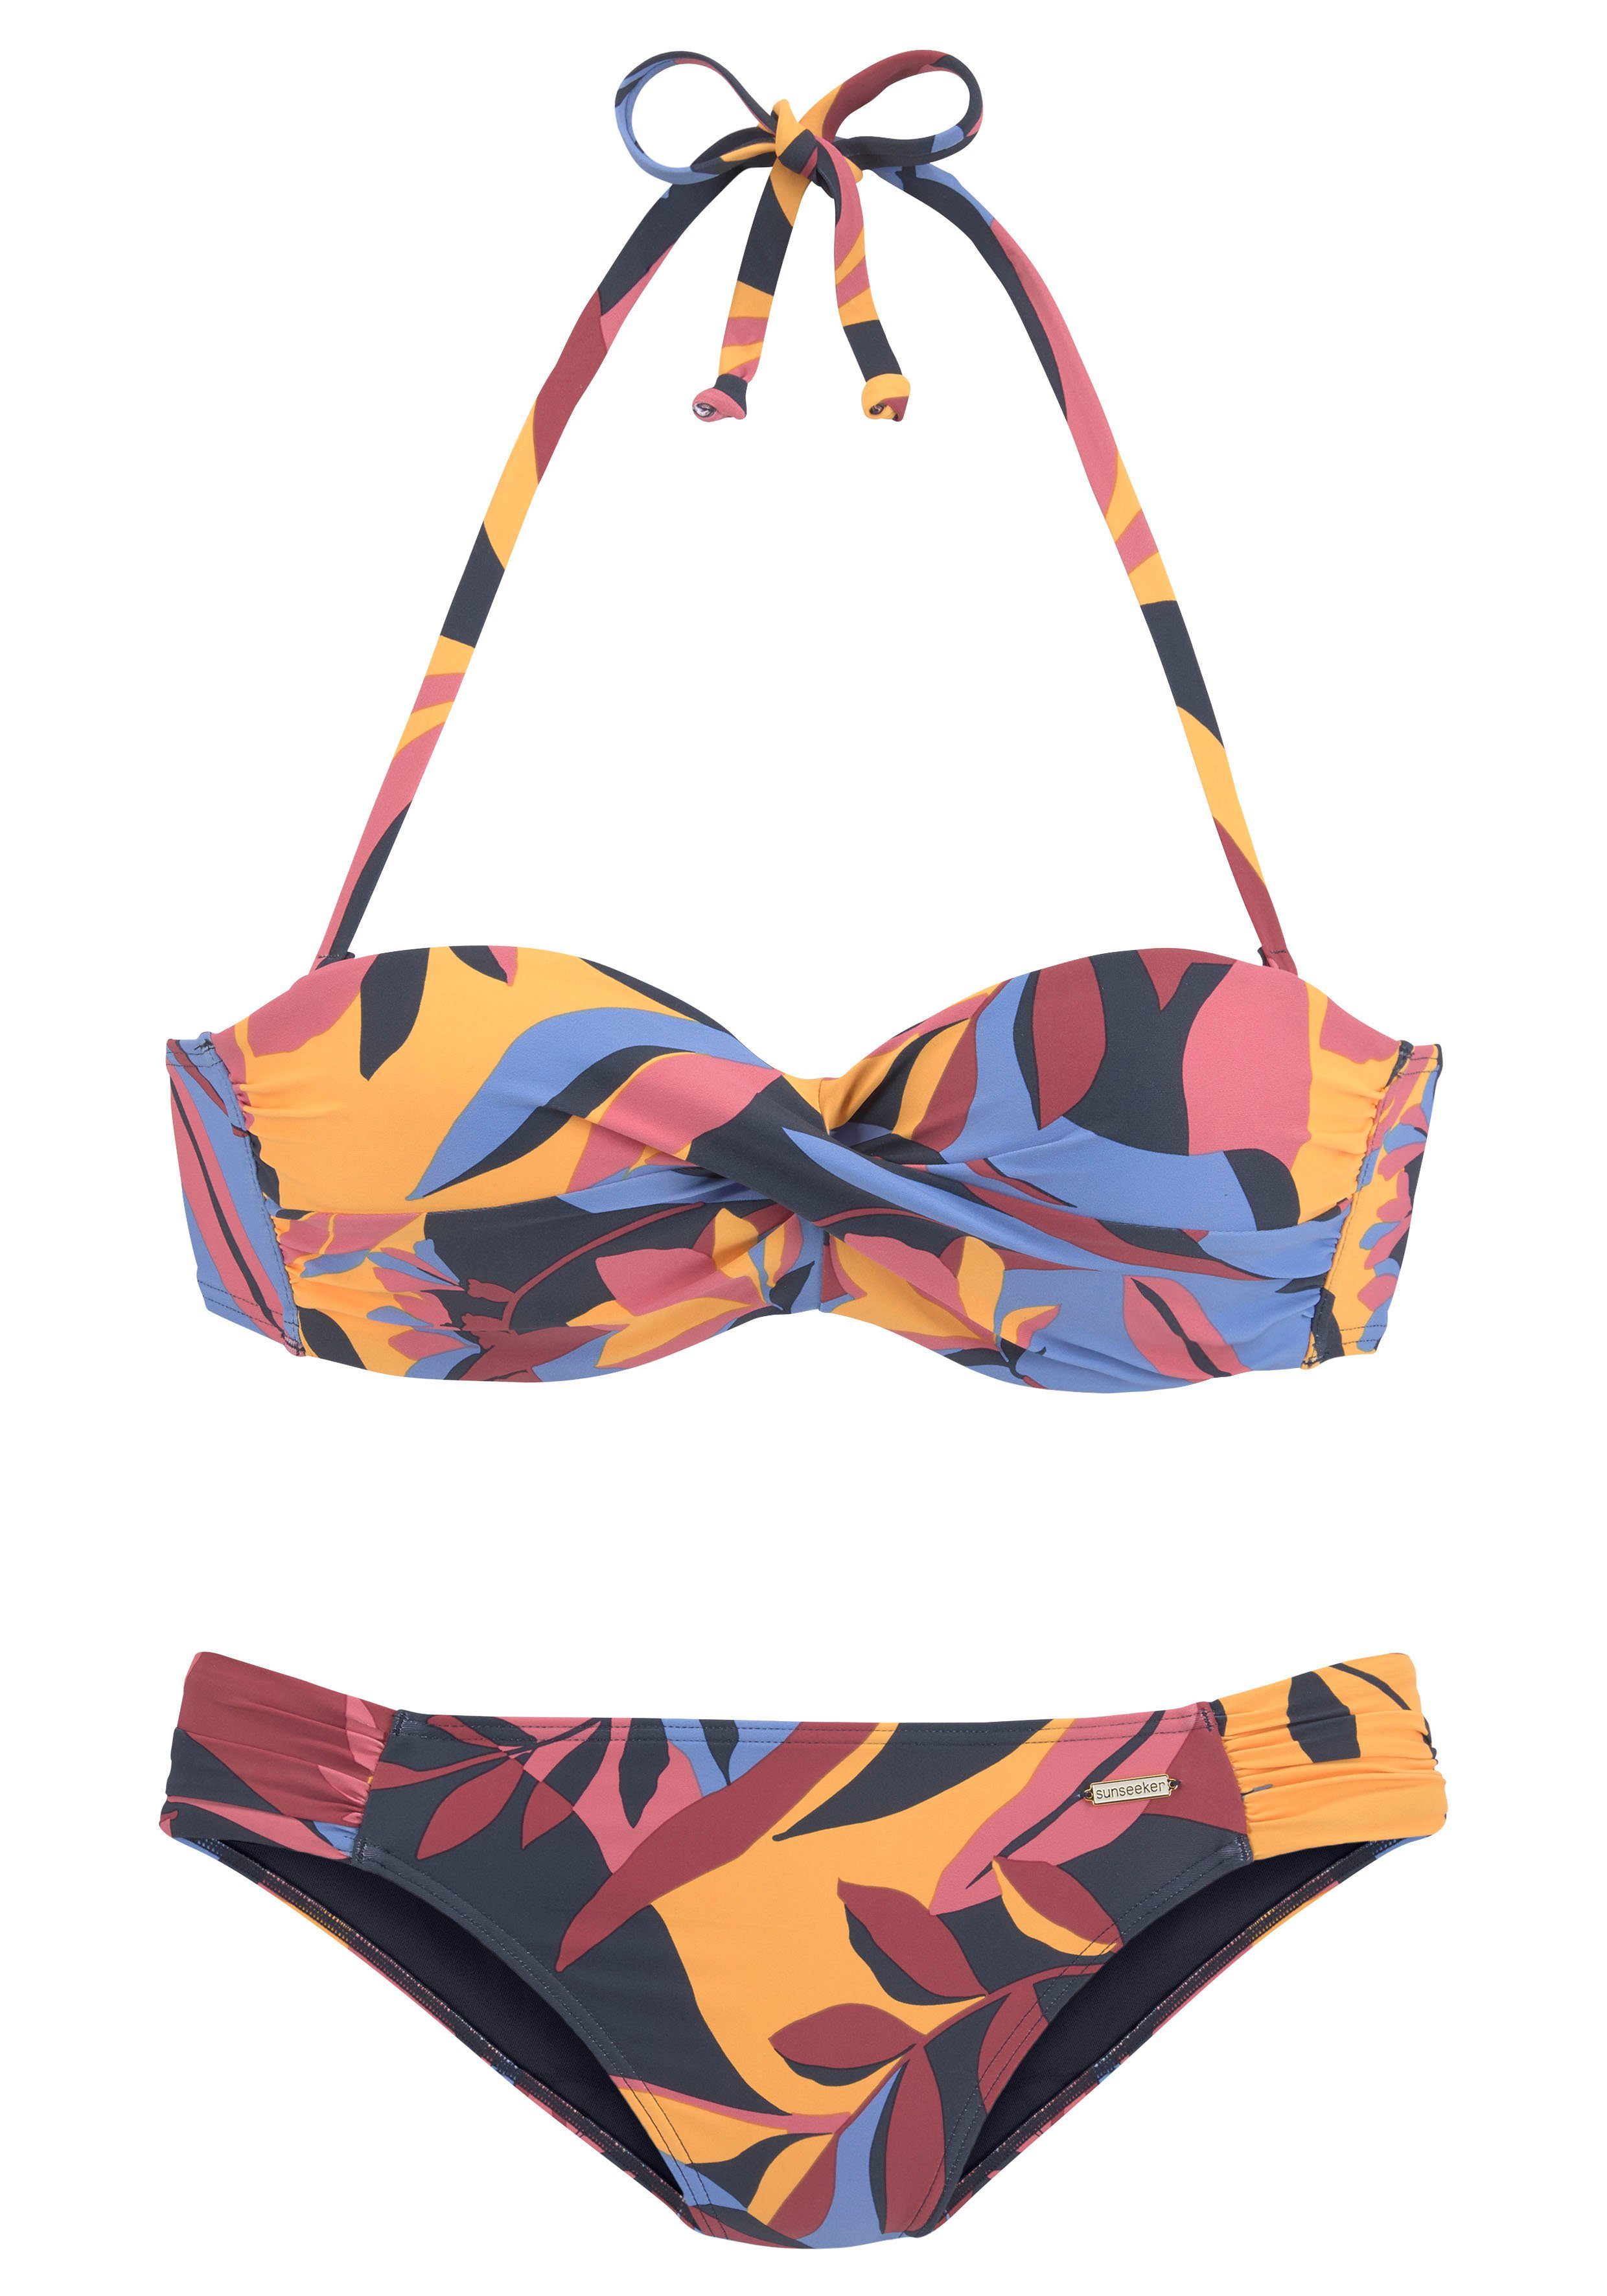 Bügel-Bandeau-Bikini marine-rostrot Sunseeker mit Blätterdruck